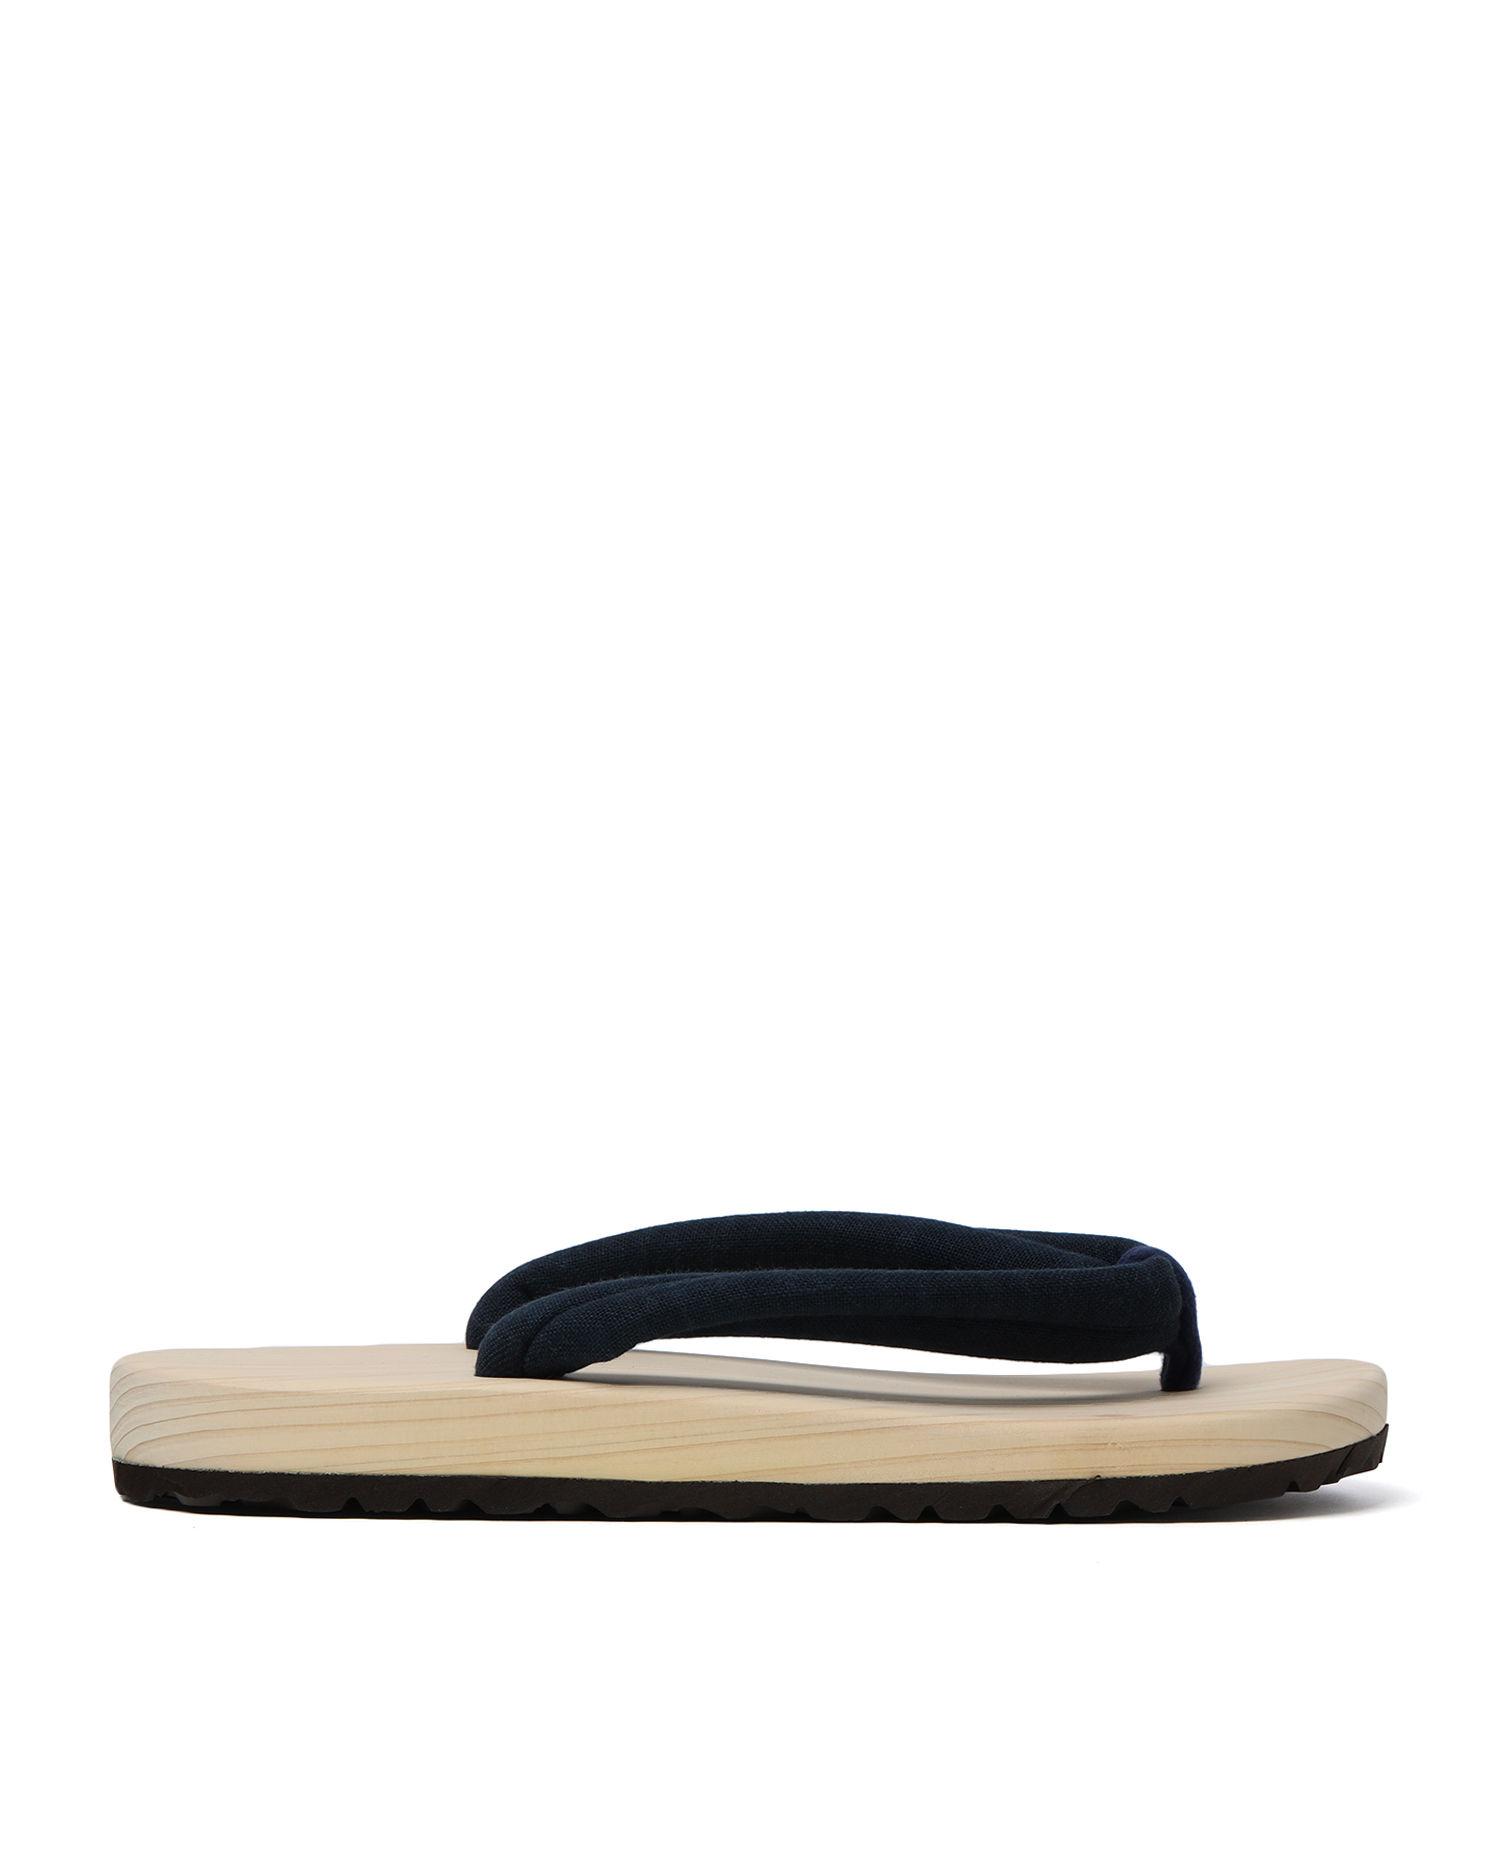 Geta flip flop sandals by BEAMS JAPAN